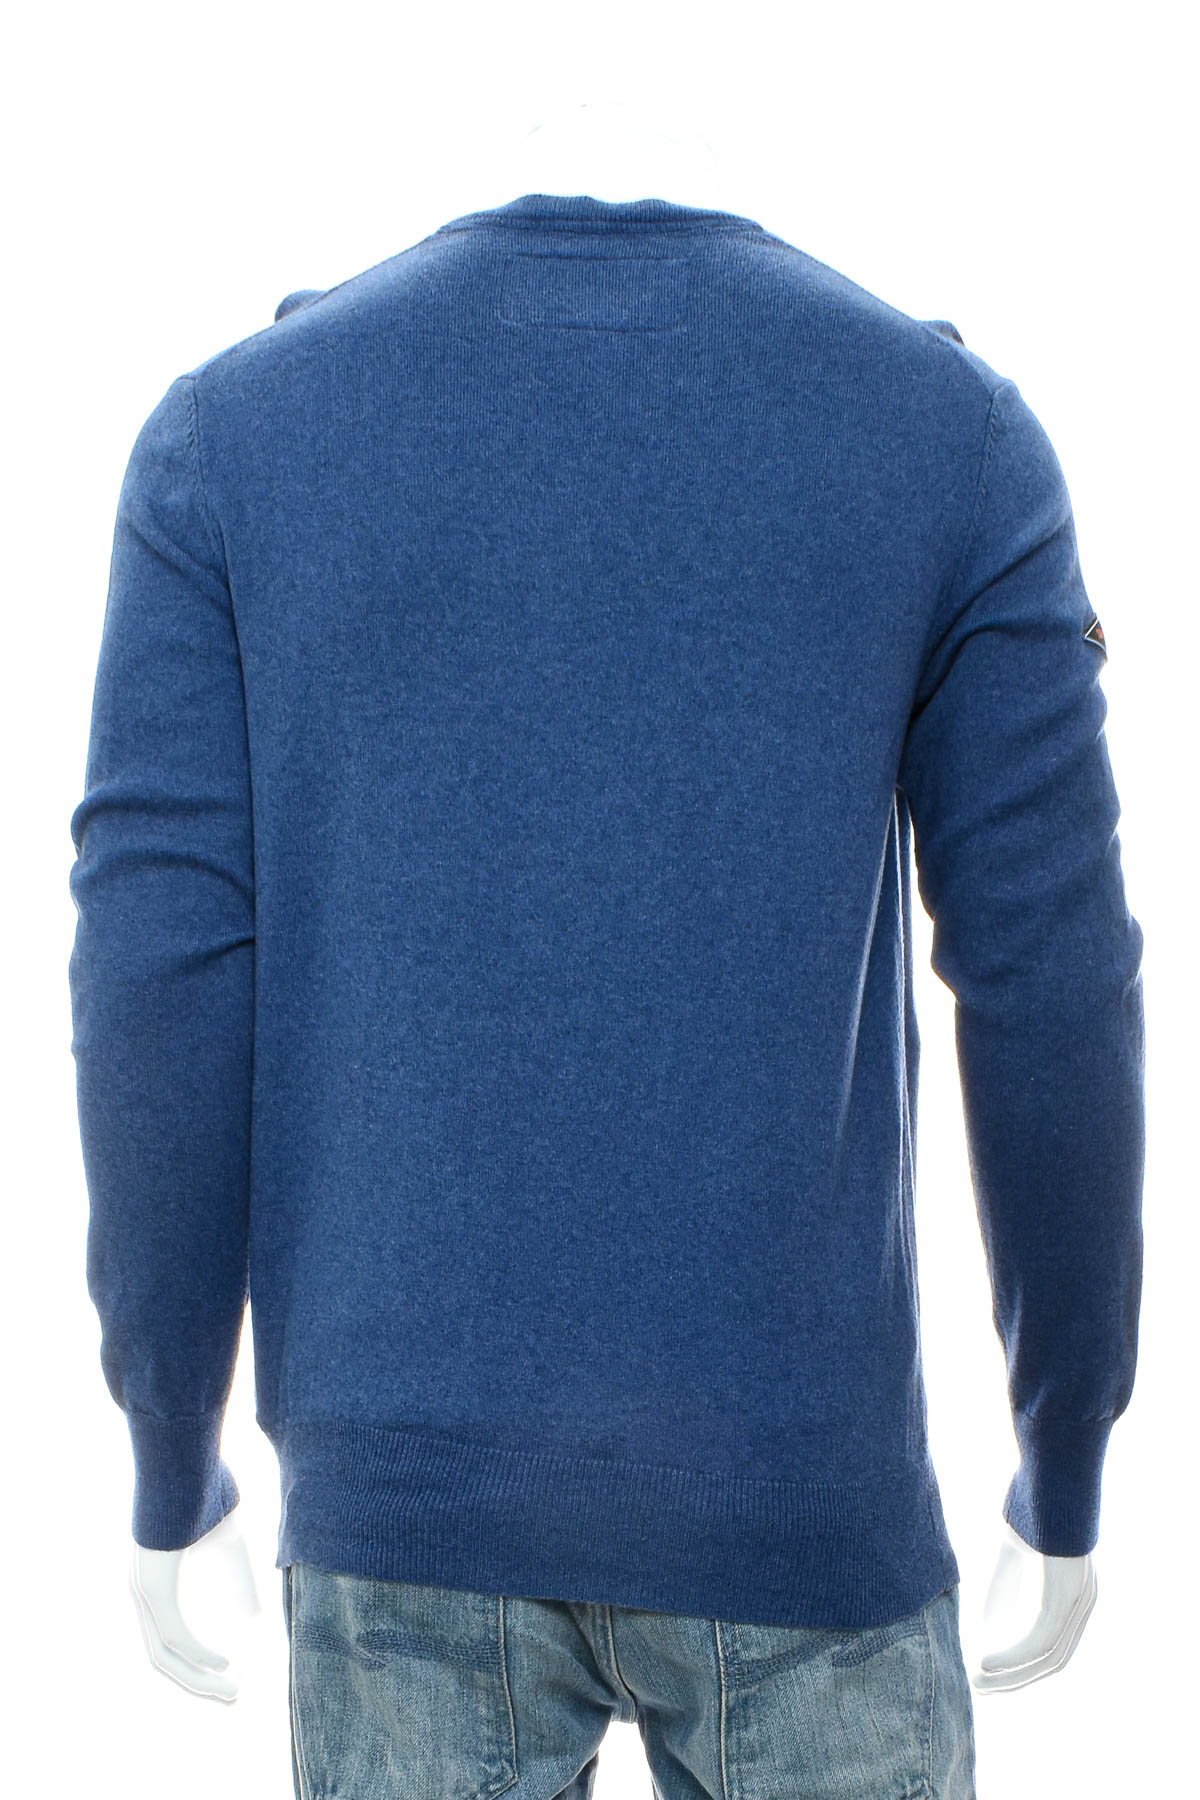 Men's sweater - SuperDry - 1